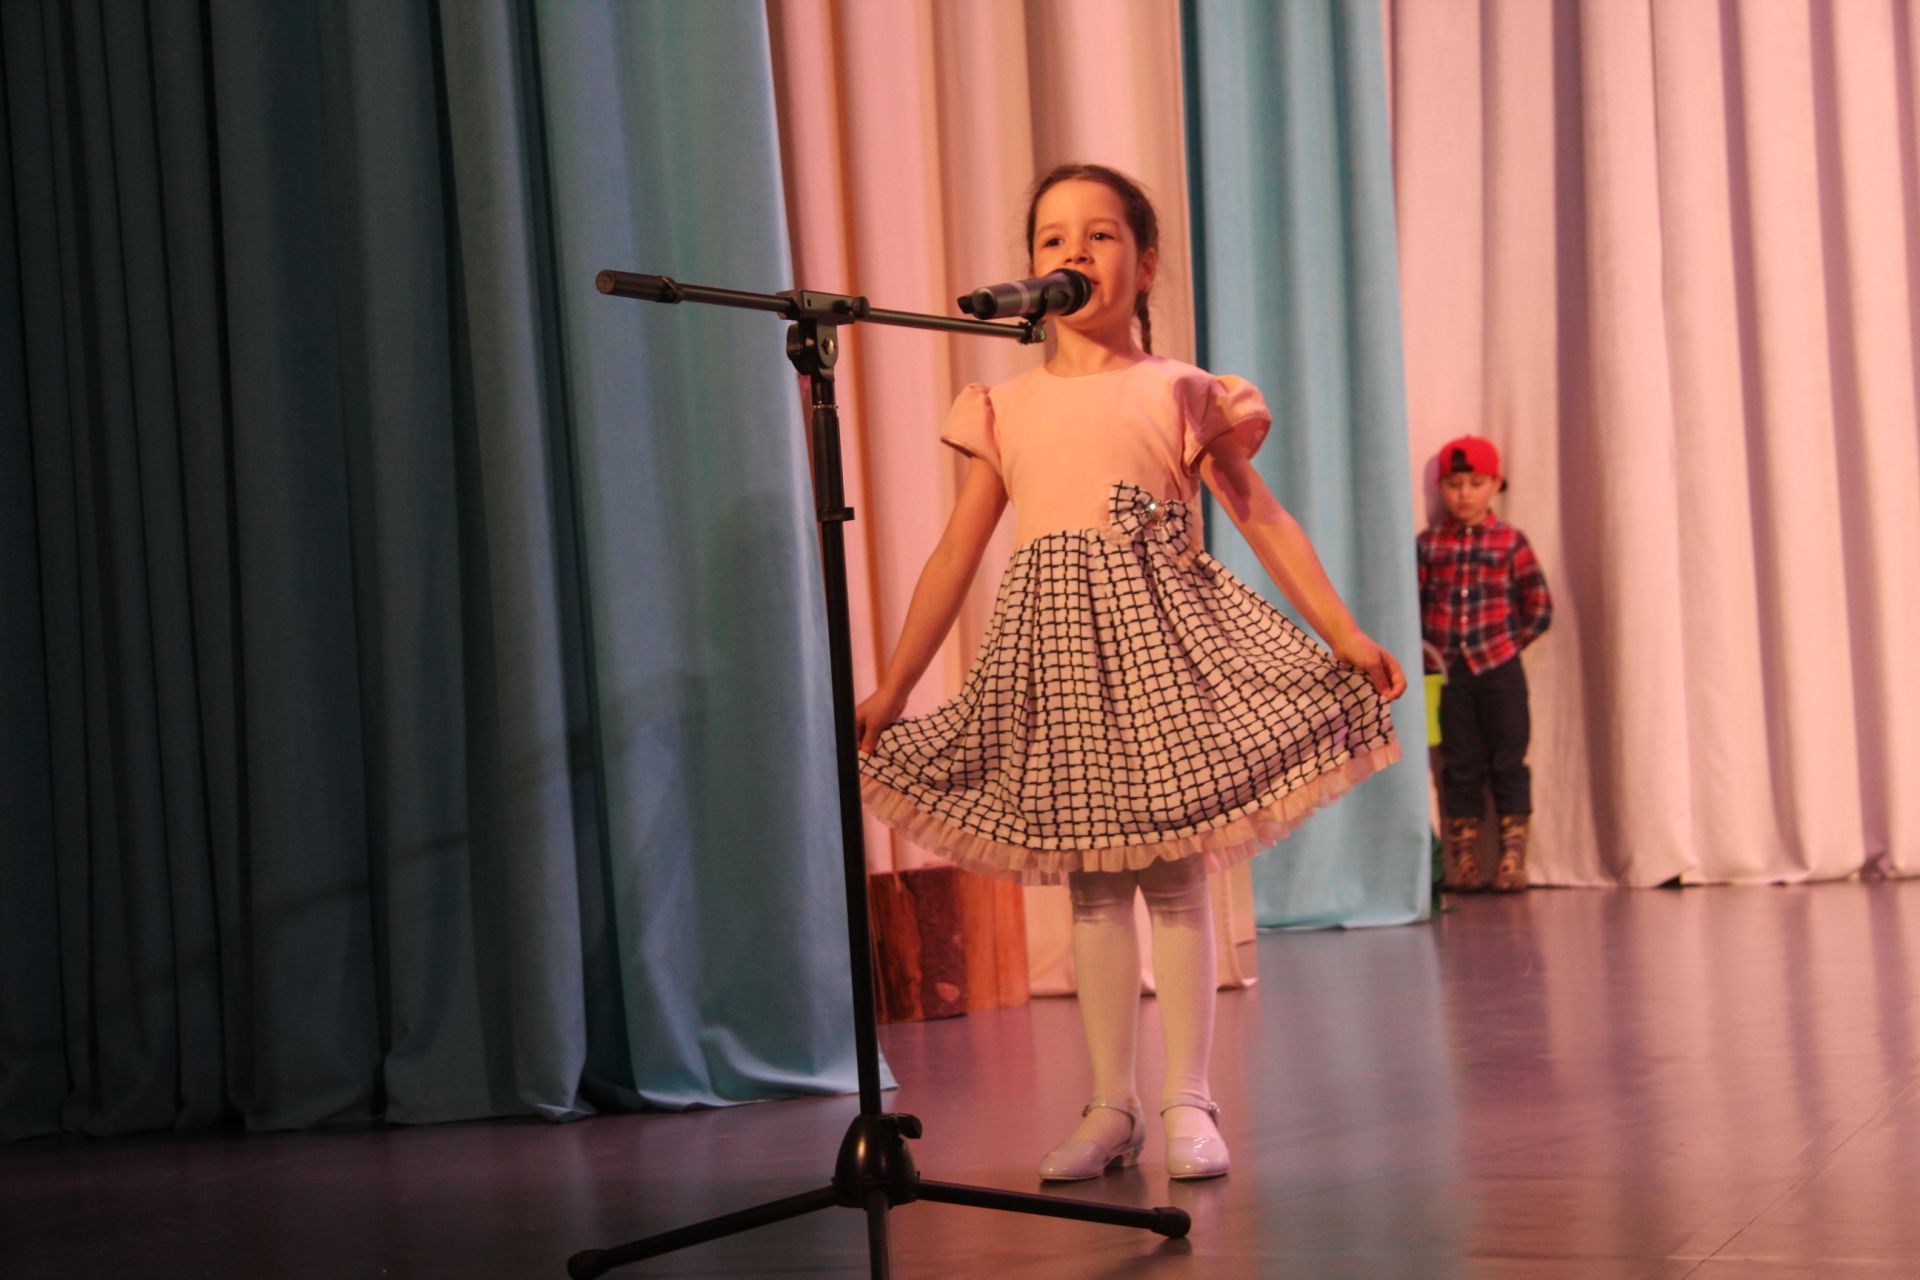 В Менделеевске состоялся региональный фестиваль-конкурс детского национального театрального искусства «Сәхнә йолдызлары»